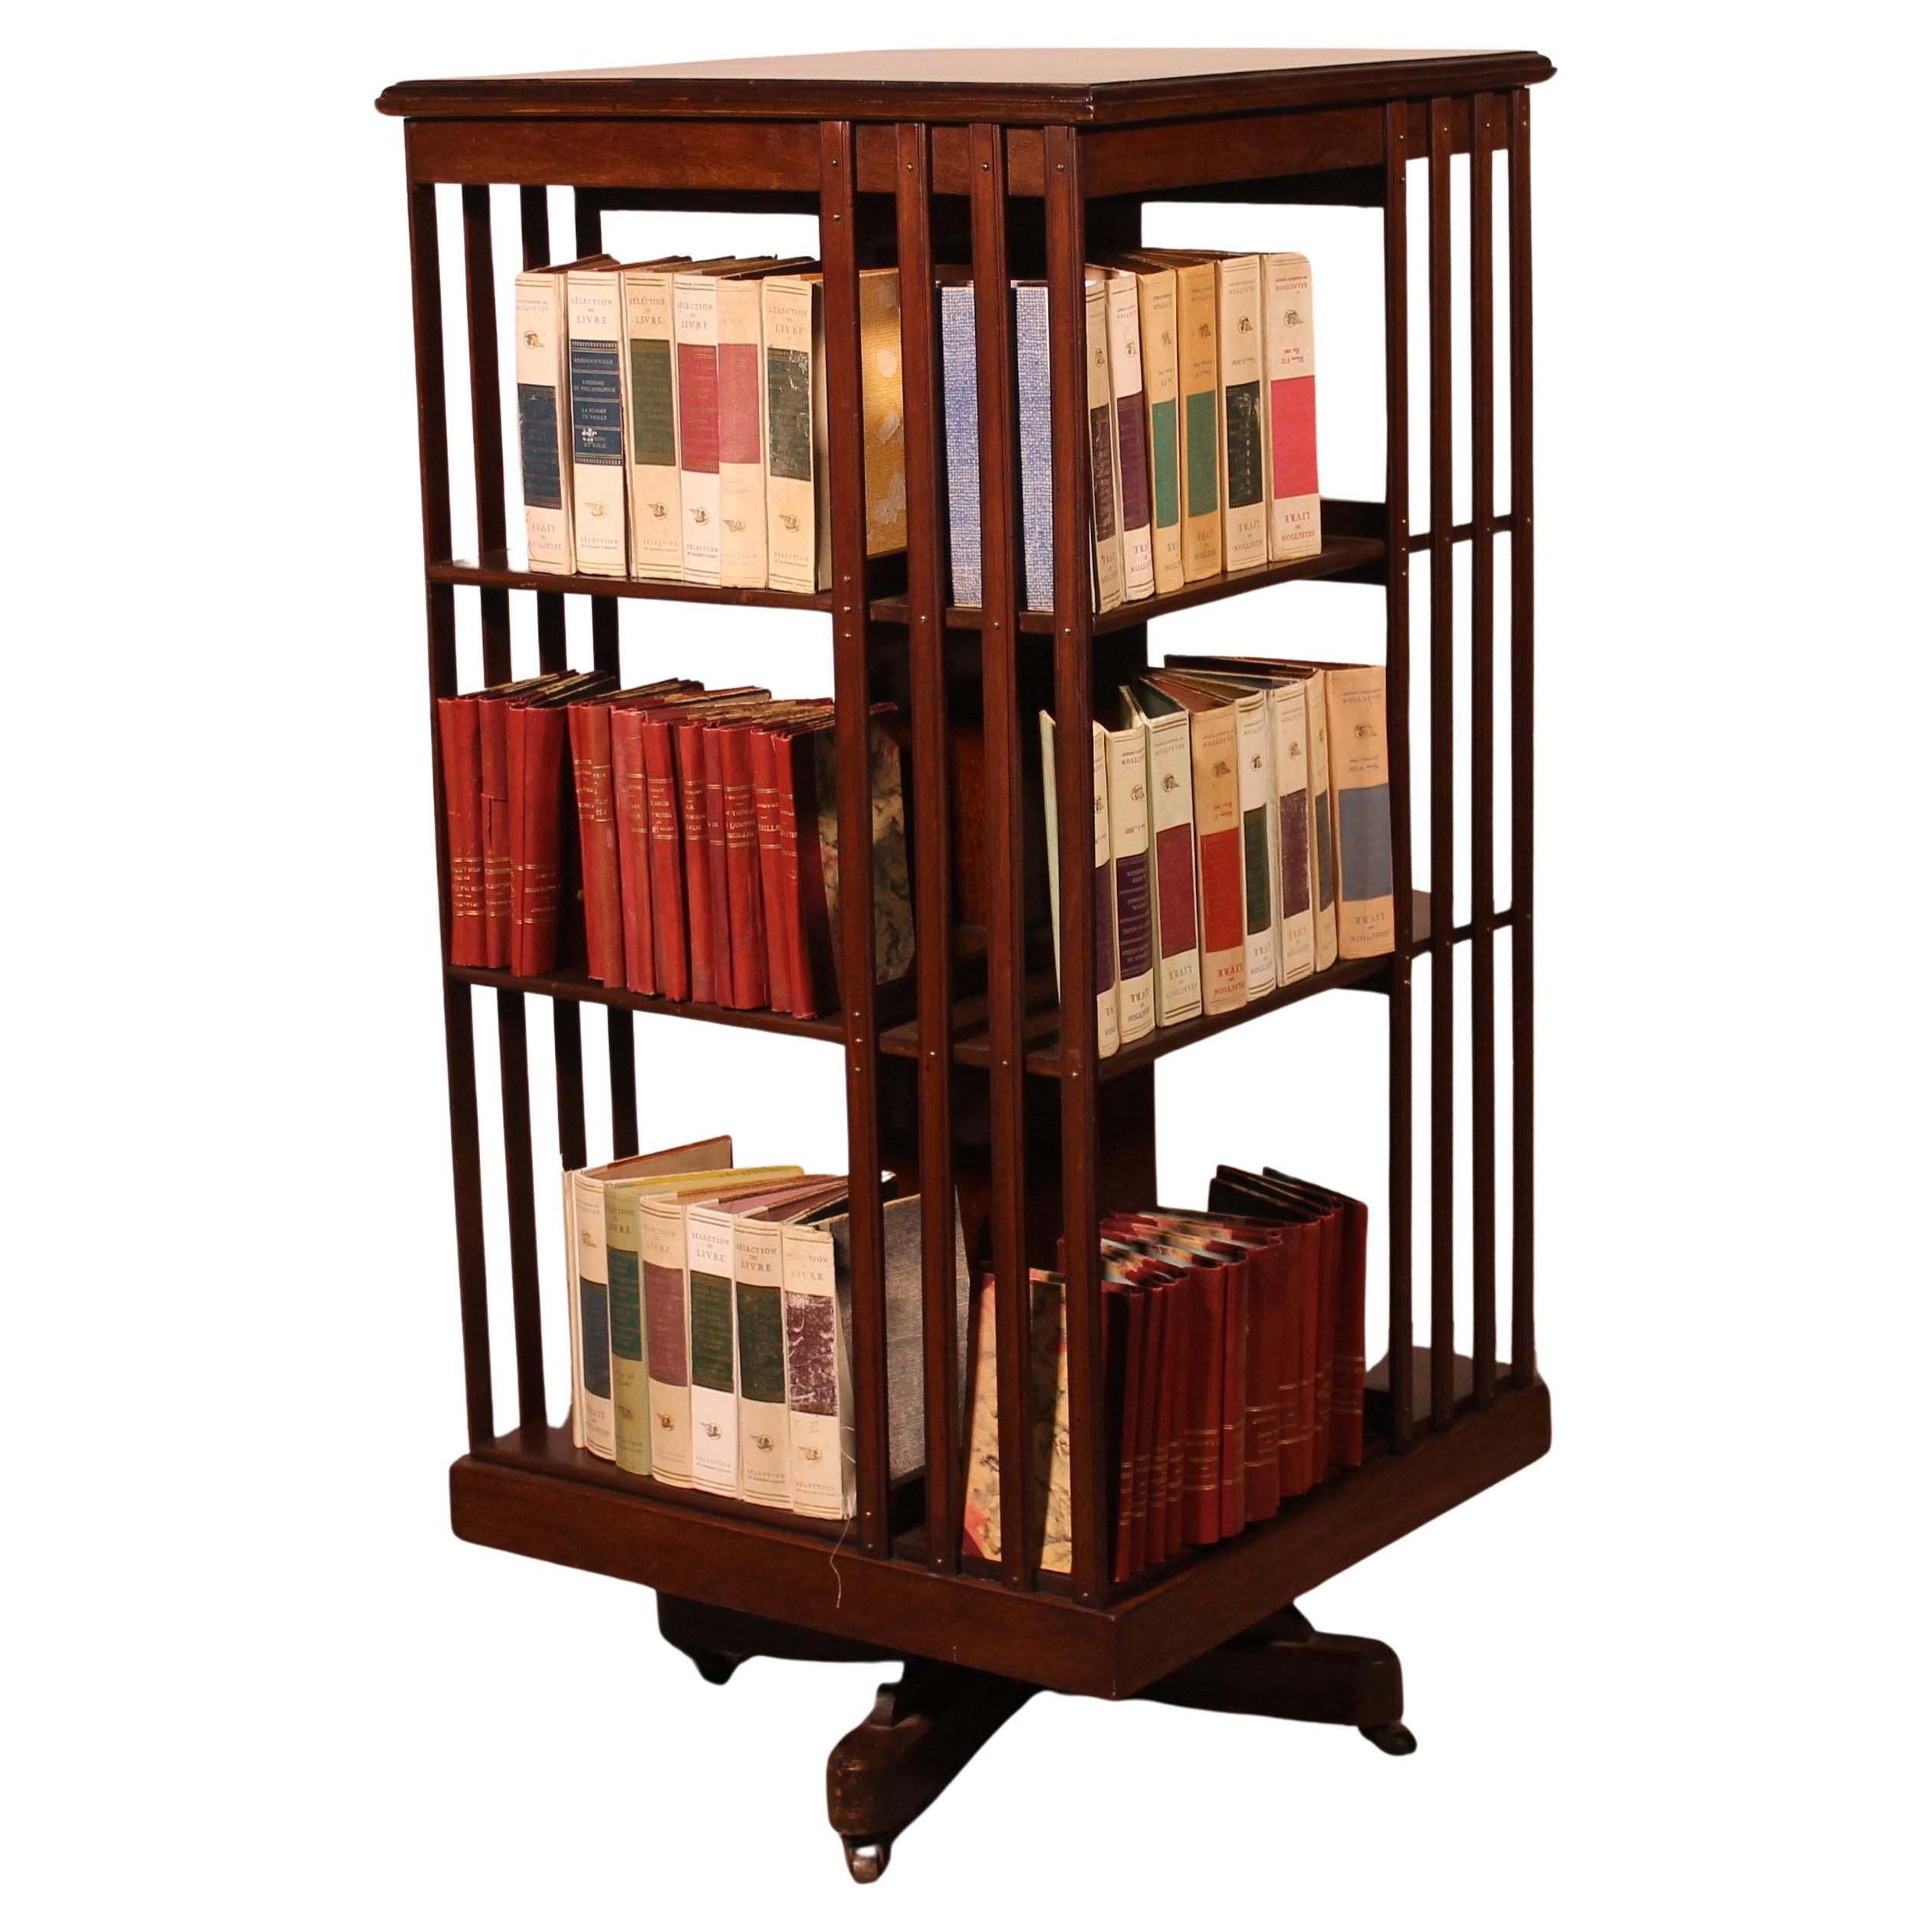 Important Mahogany Revolving Bookcase From The 19th Century